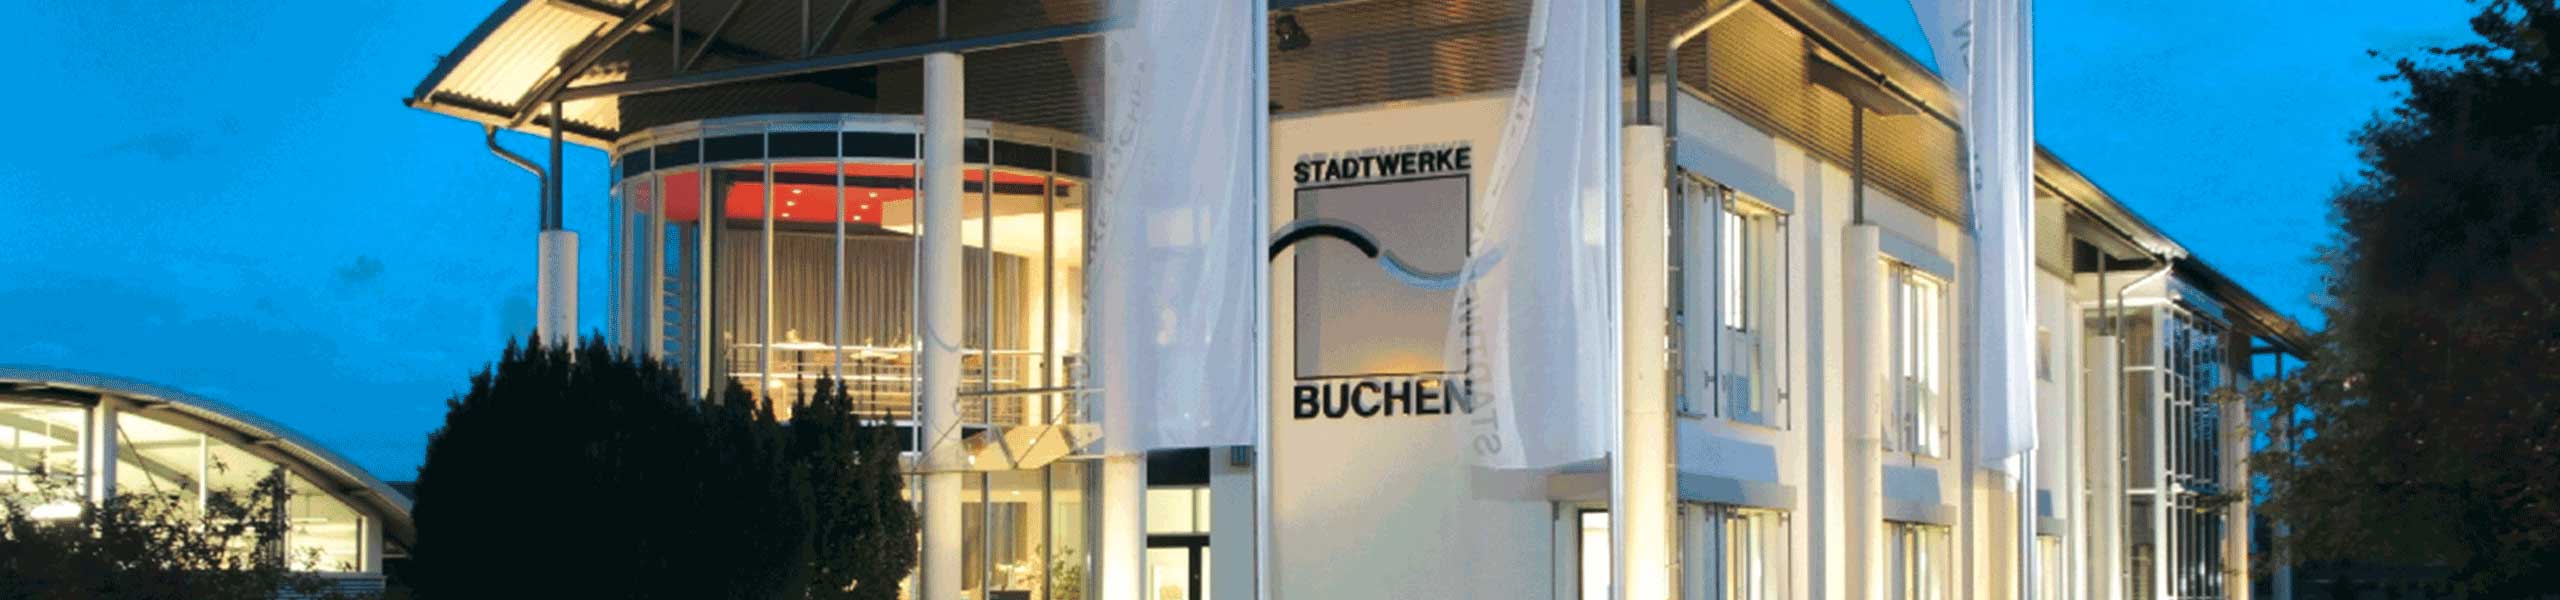 Stadtwerke Buchen GmbH & Co KG - Ihr Versorger vor Ort - EEG